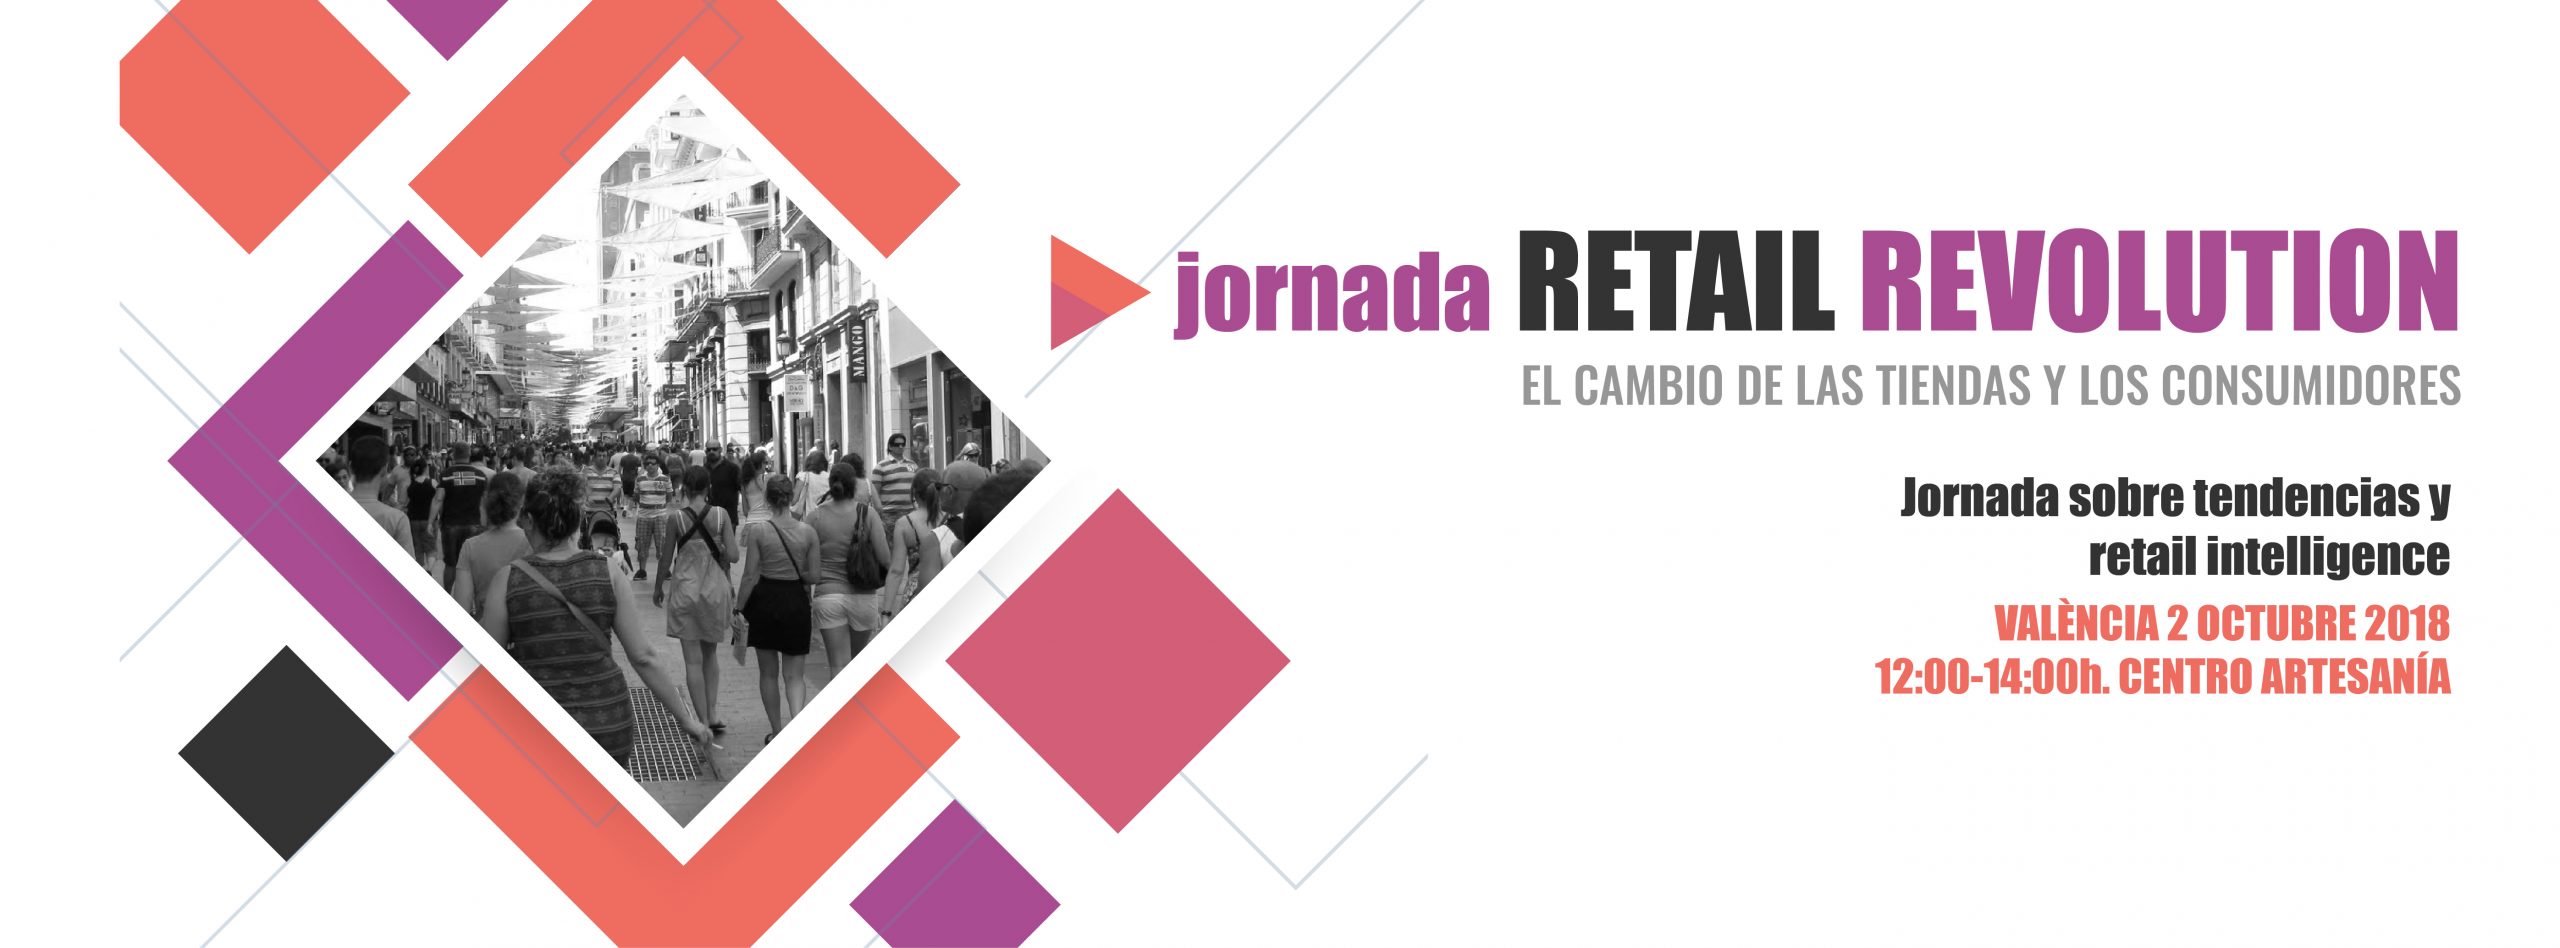 Jornada Retail Revolution 2018 en Valencia el 02 de octubre